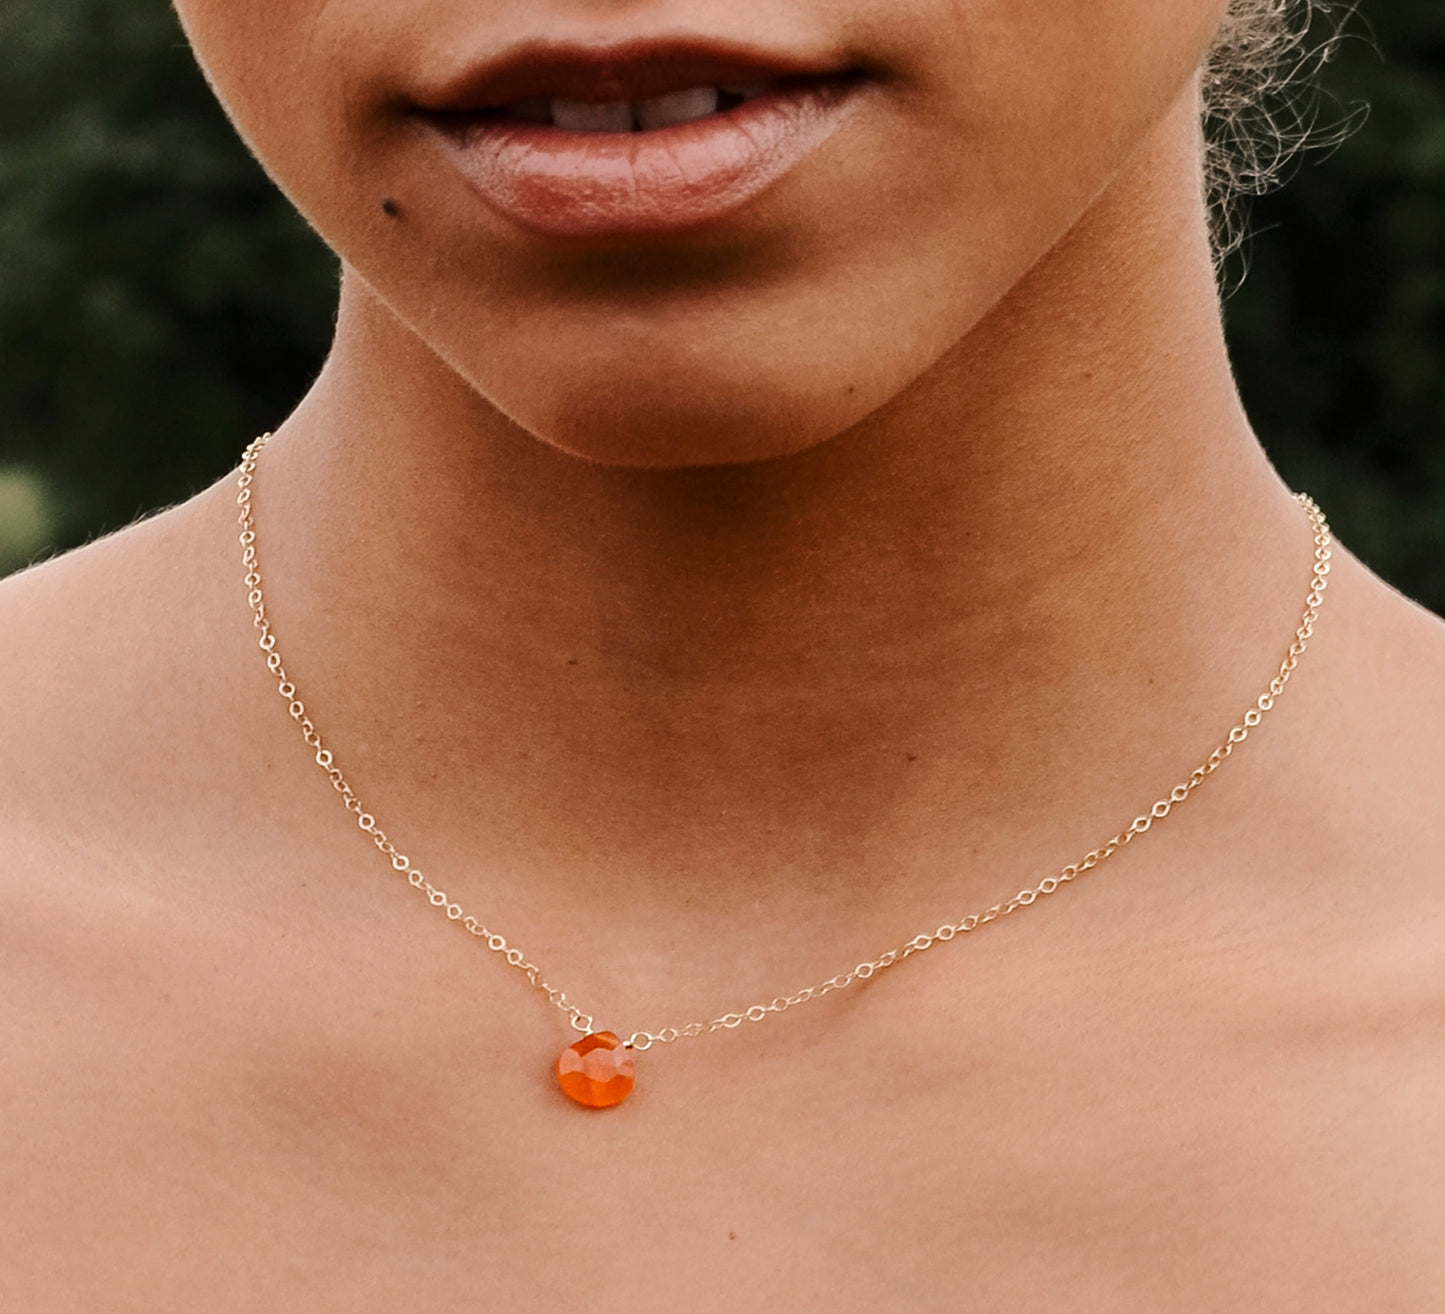 Orange Carnelian Necklace in Sterling Silver or Gold Filled, teardrop shape